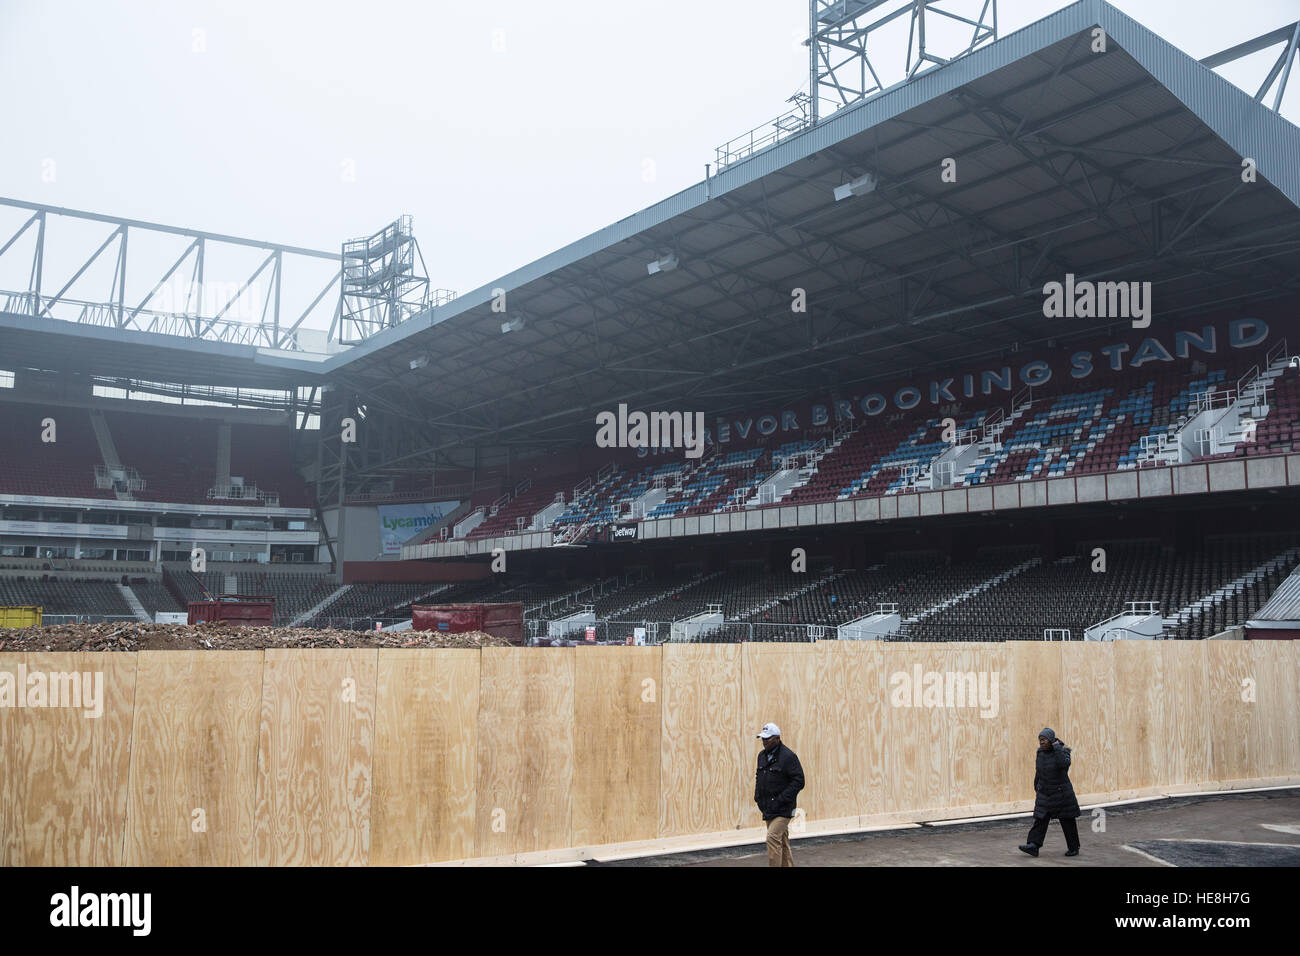 Londra, Regno Unito. 17 dicembre, 2016. La East Stand al West Ham United dell ex Boleyn Ground di Upton Park ora è stata demolita. Foto Stock